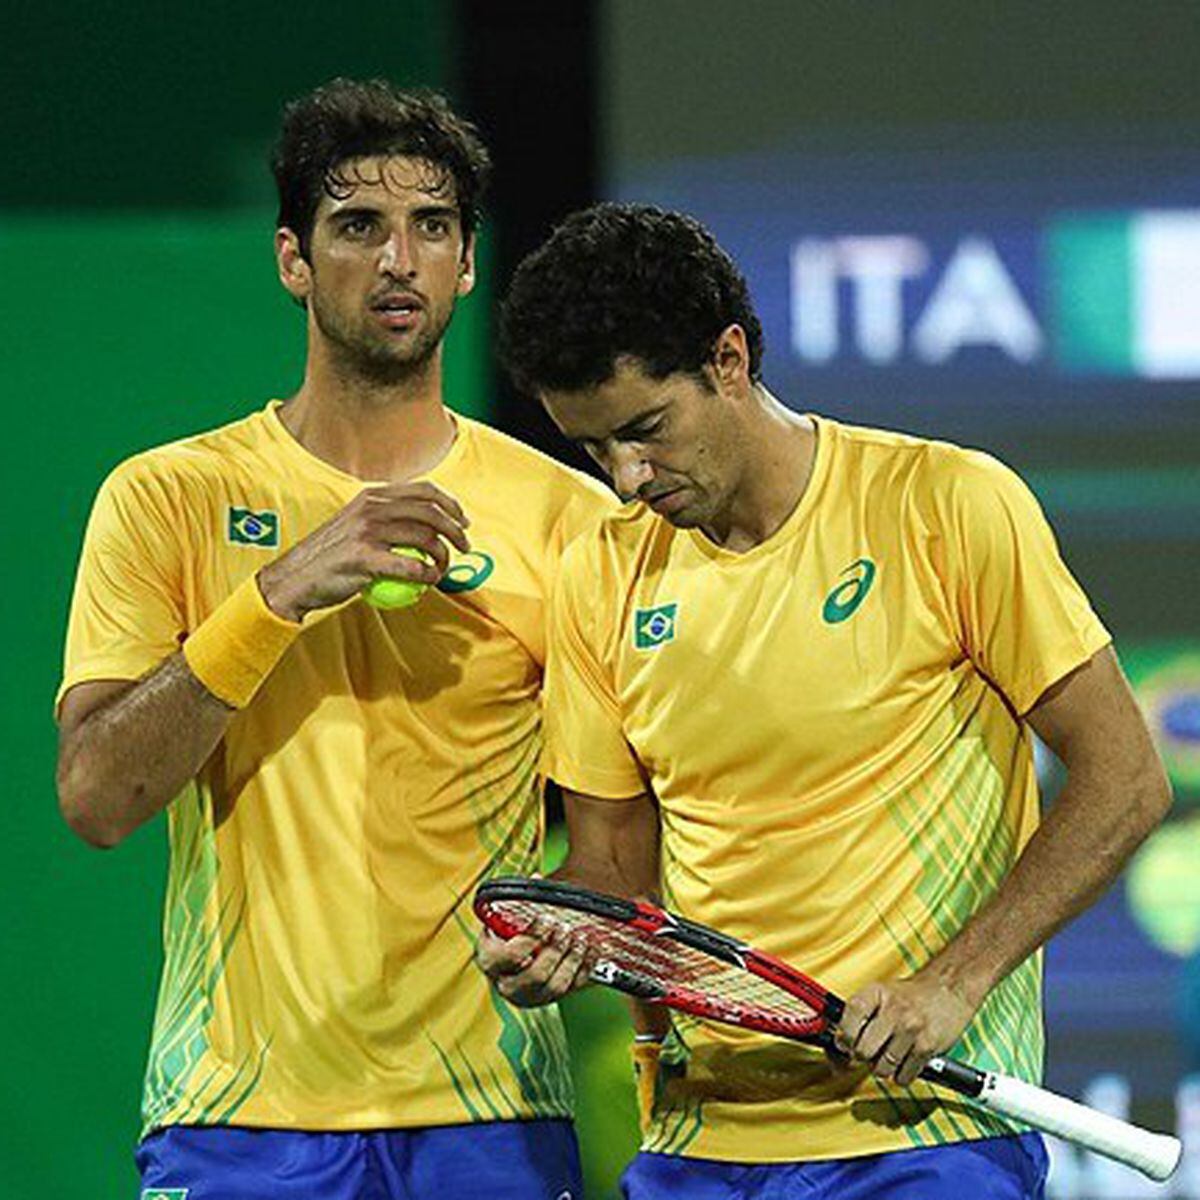 Bruno Soares é o melhor tenista do Prêmio Brasil Olímpico 2016 -  Confederação Brasileira de Tênis